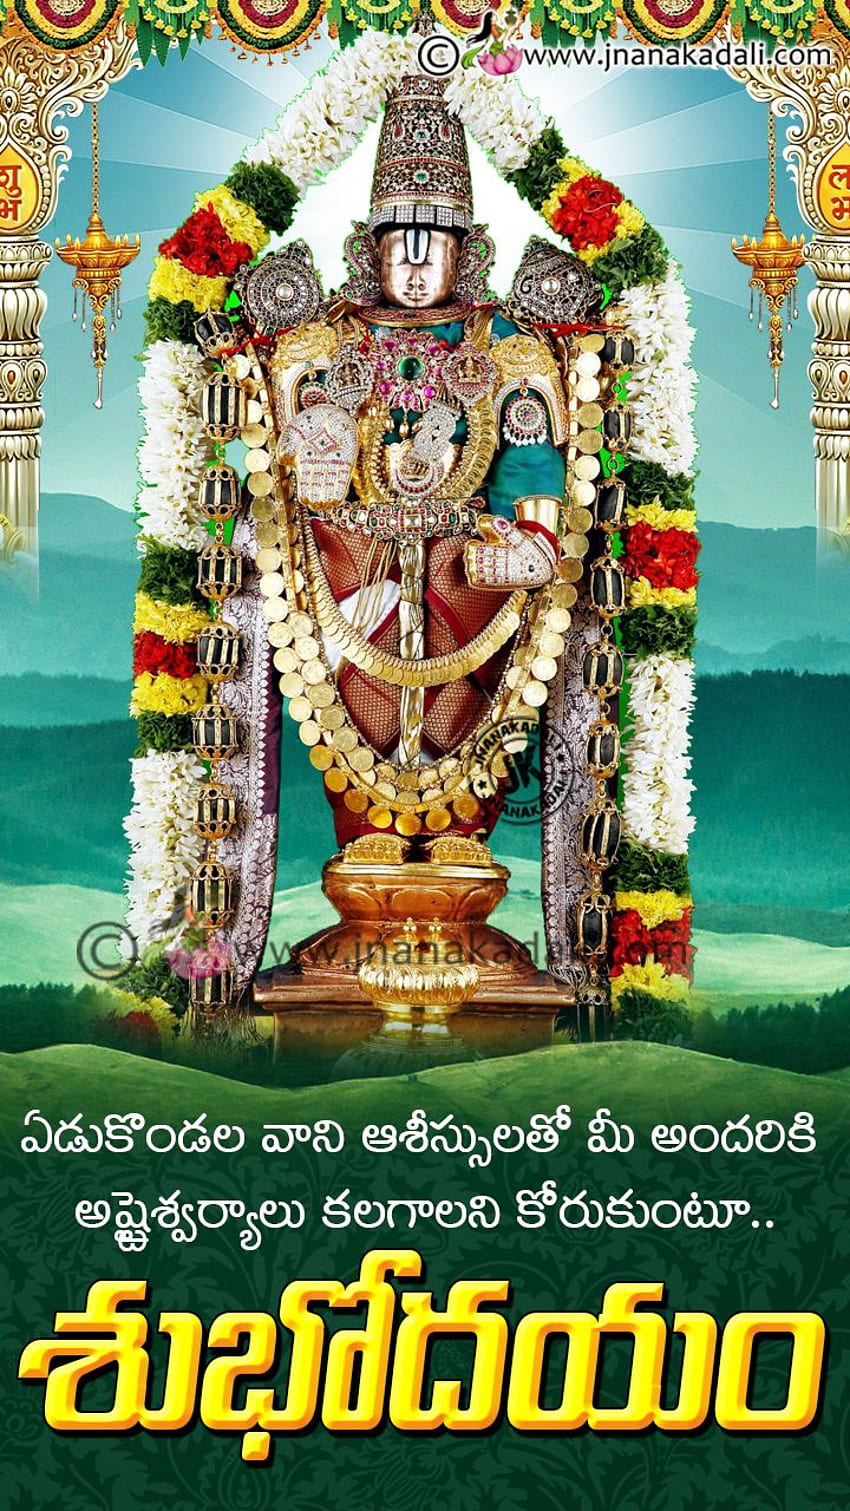 Telugu Good morning with Lord Venkateswara swami png, Lord Balaji ...